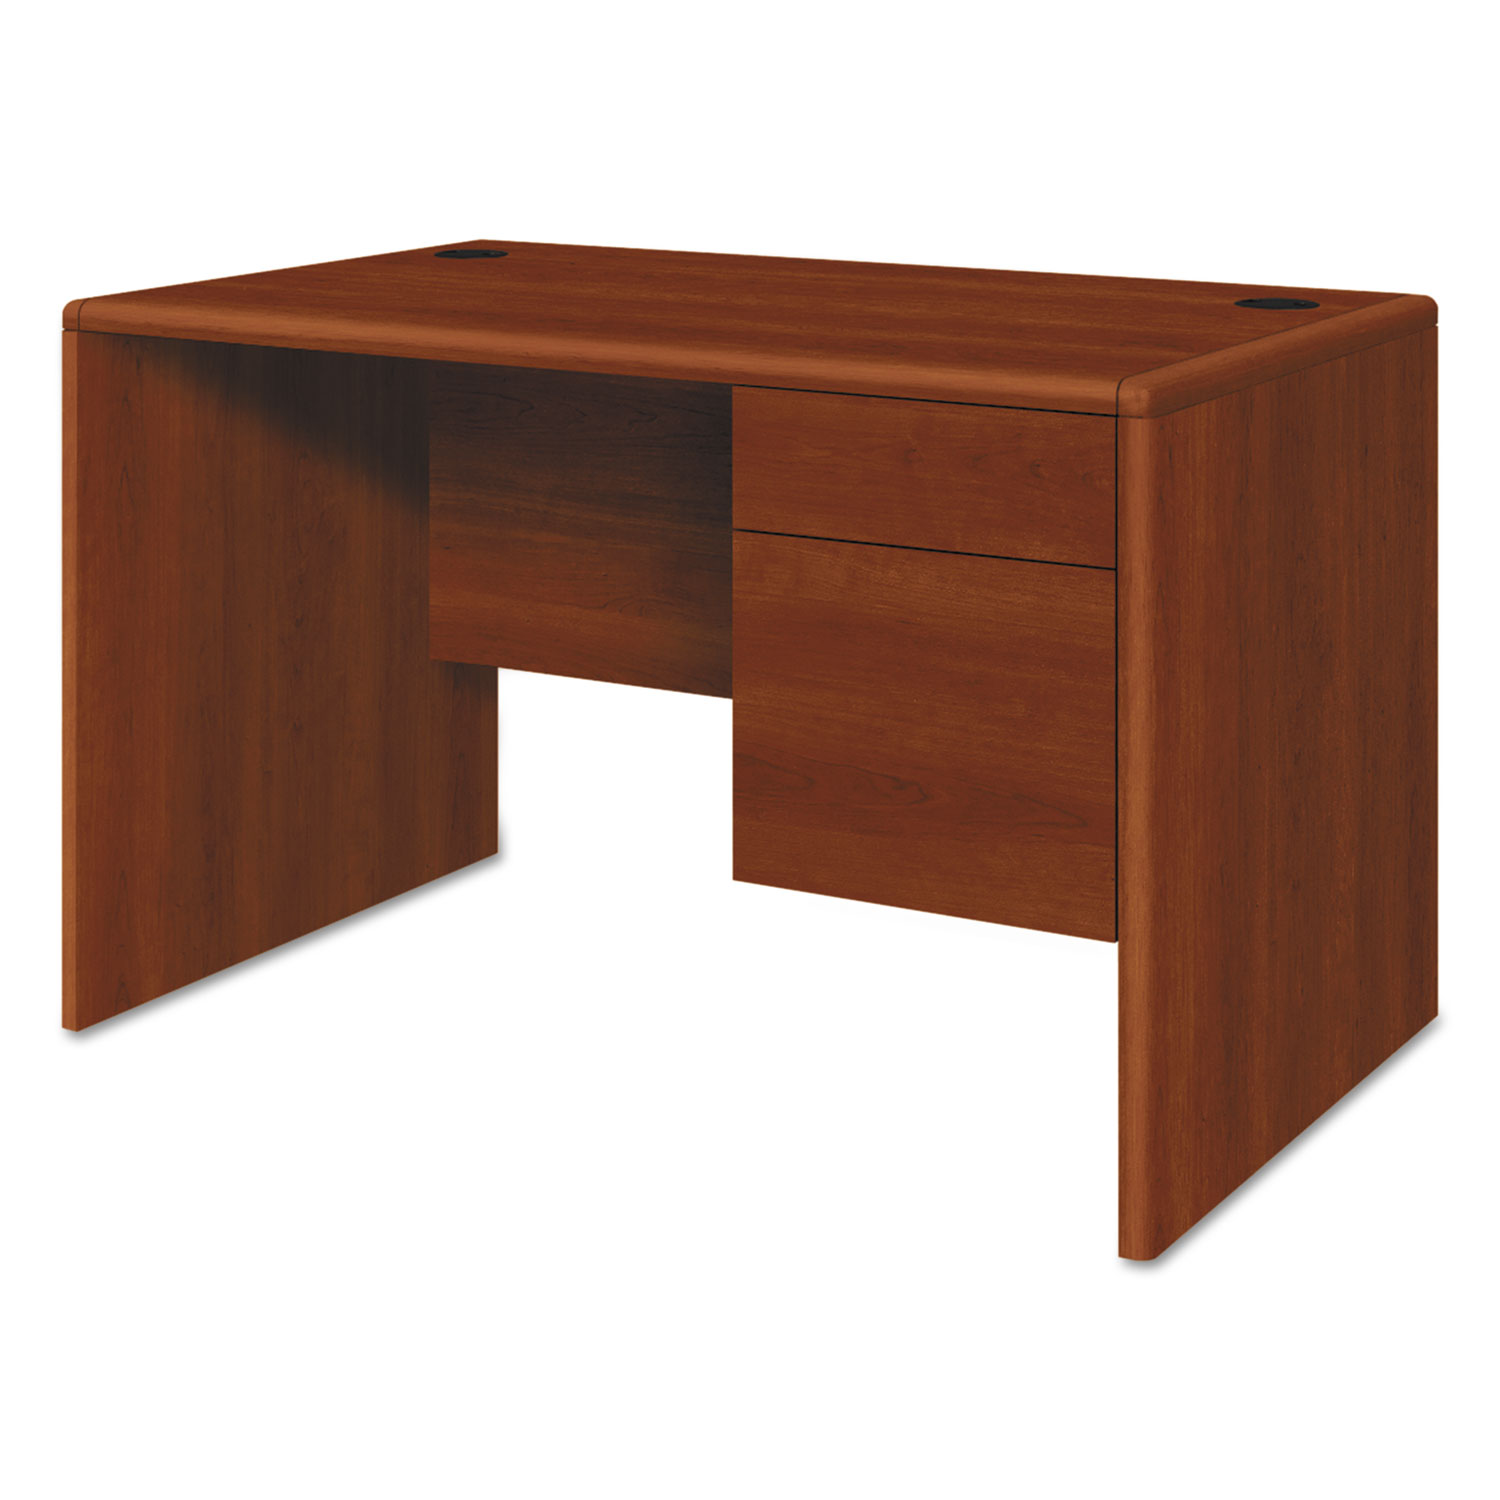 10700 Series Single 3/4 Right Pedestal Desk, 48w x 30d x 29 1/2h, Cognac